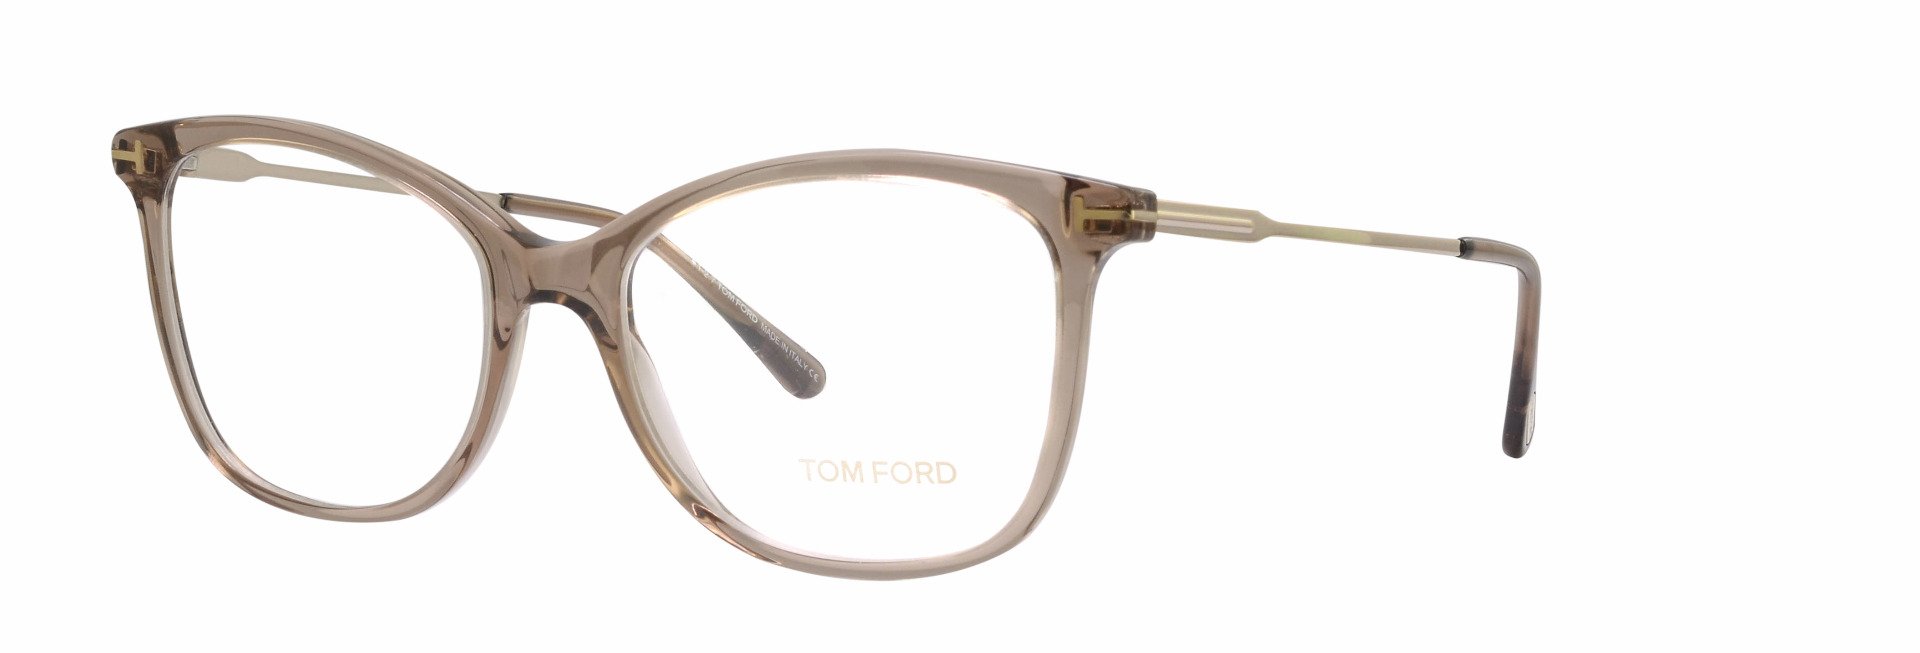 Tom Ford TF5510 Square Glasses | Fashion Eyewear